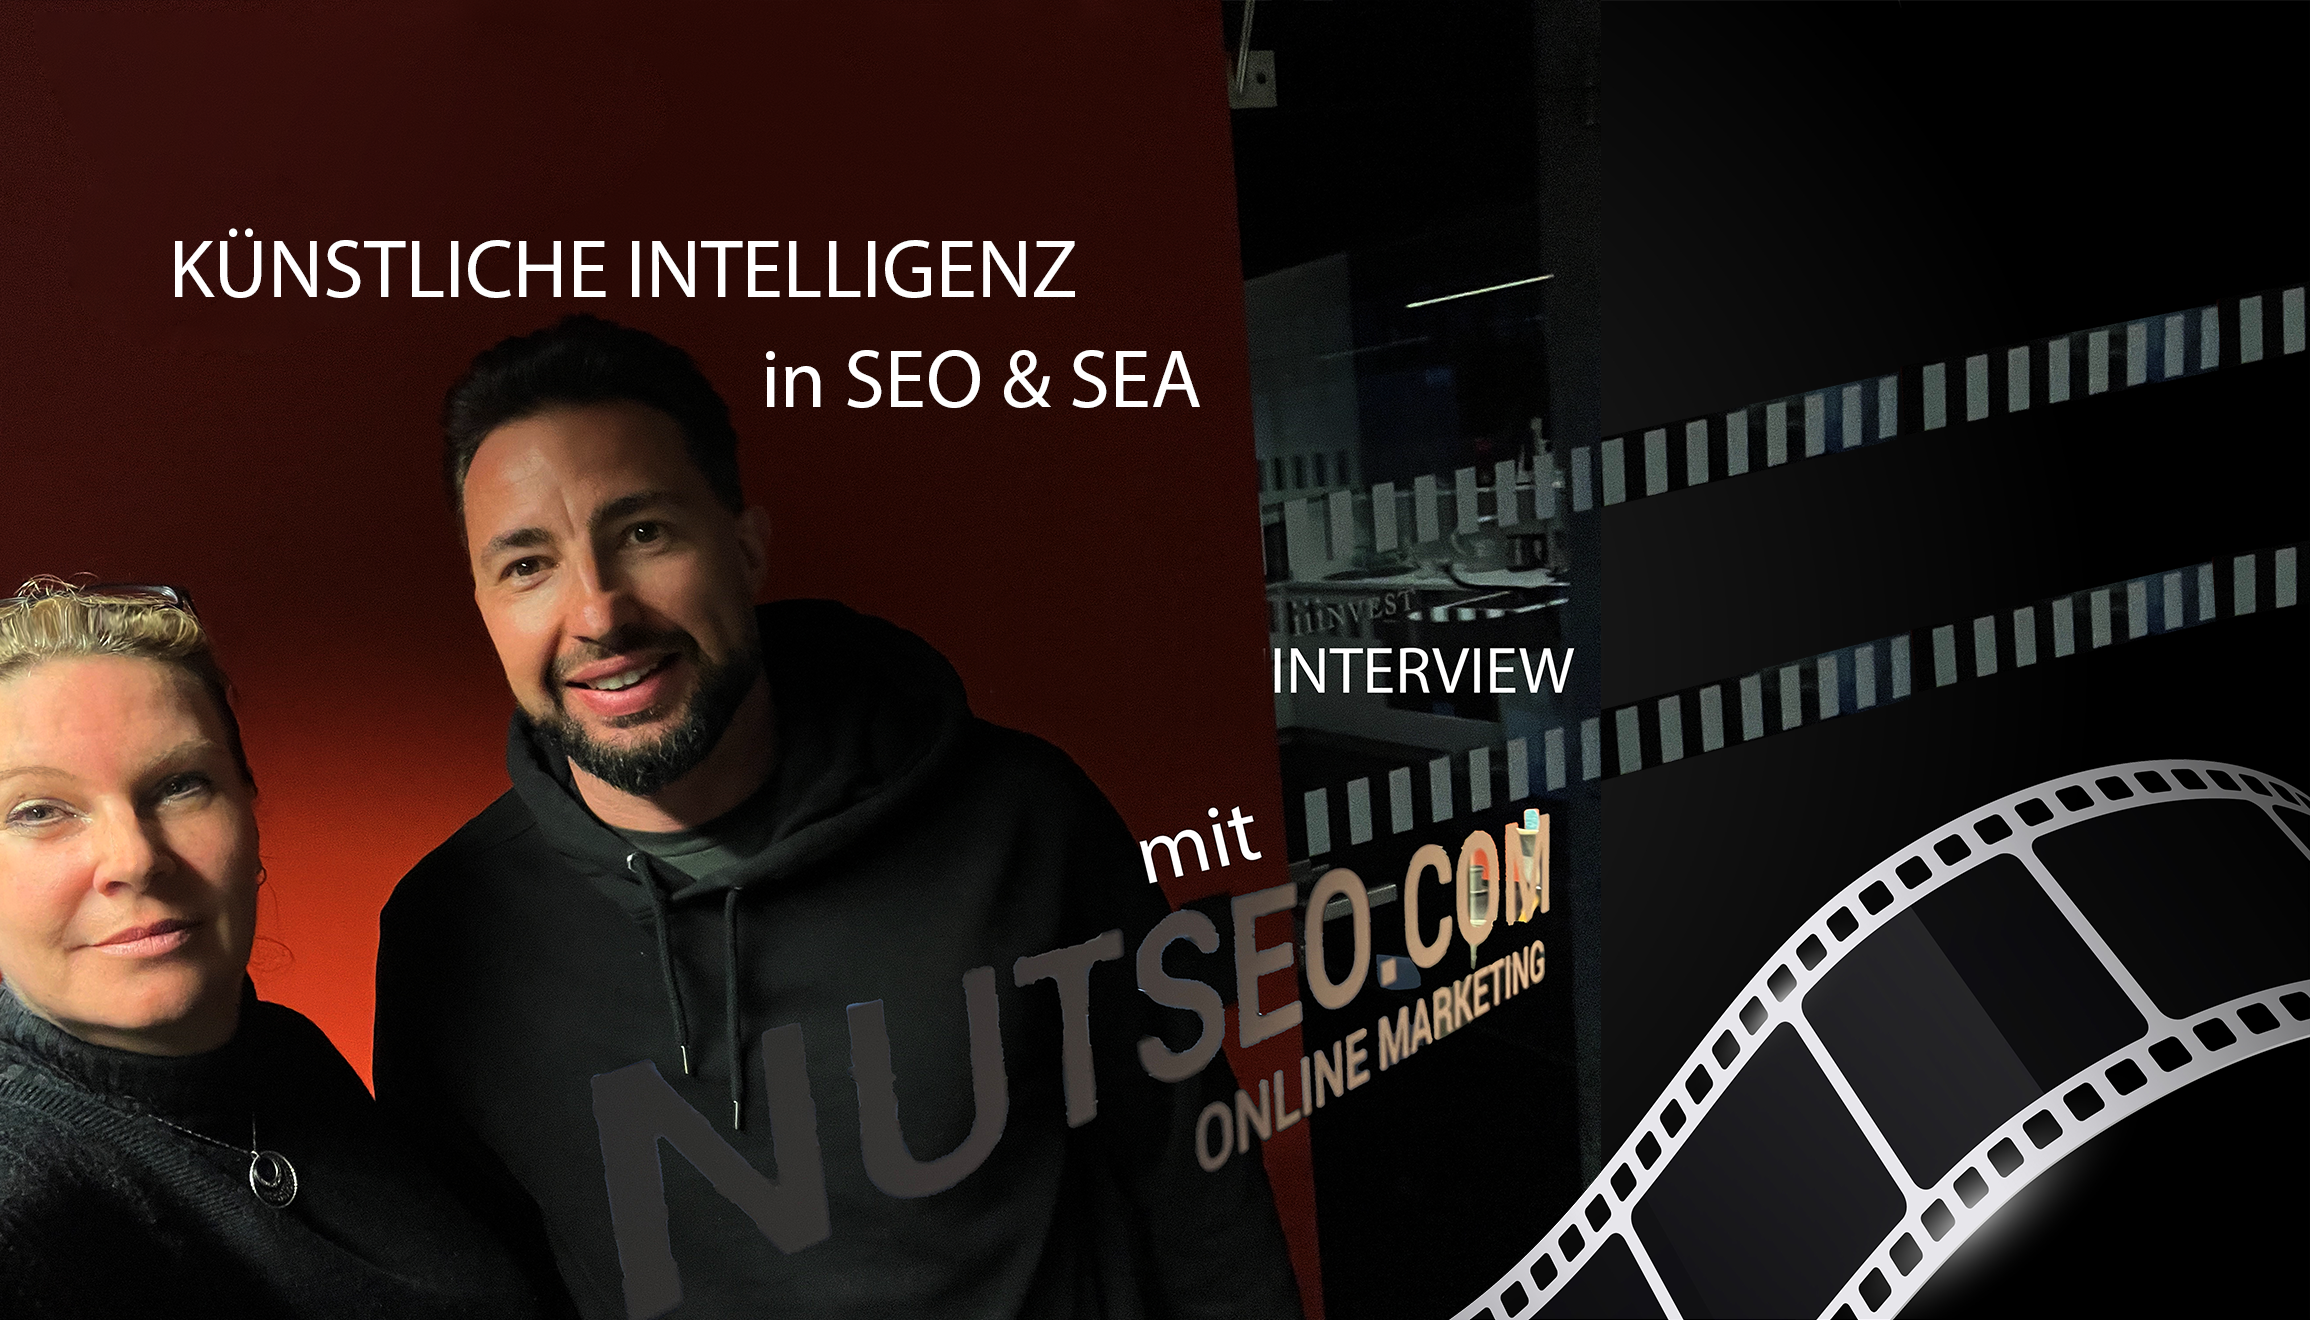 Interviewpartner mit Schriftzug Nutseo und Filmstreifen sowie headline Künstliche Intelligenz in SEO und SEA